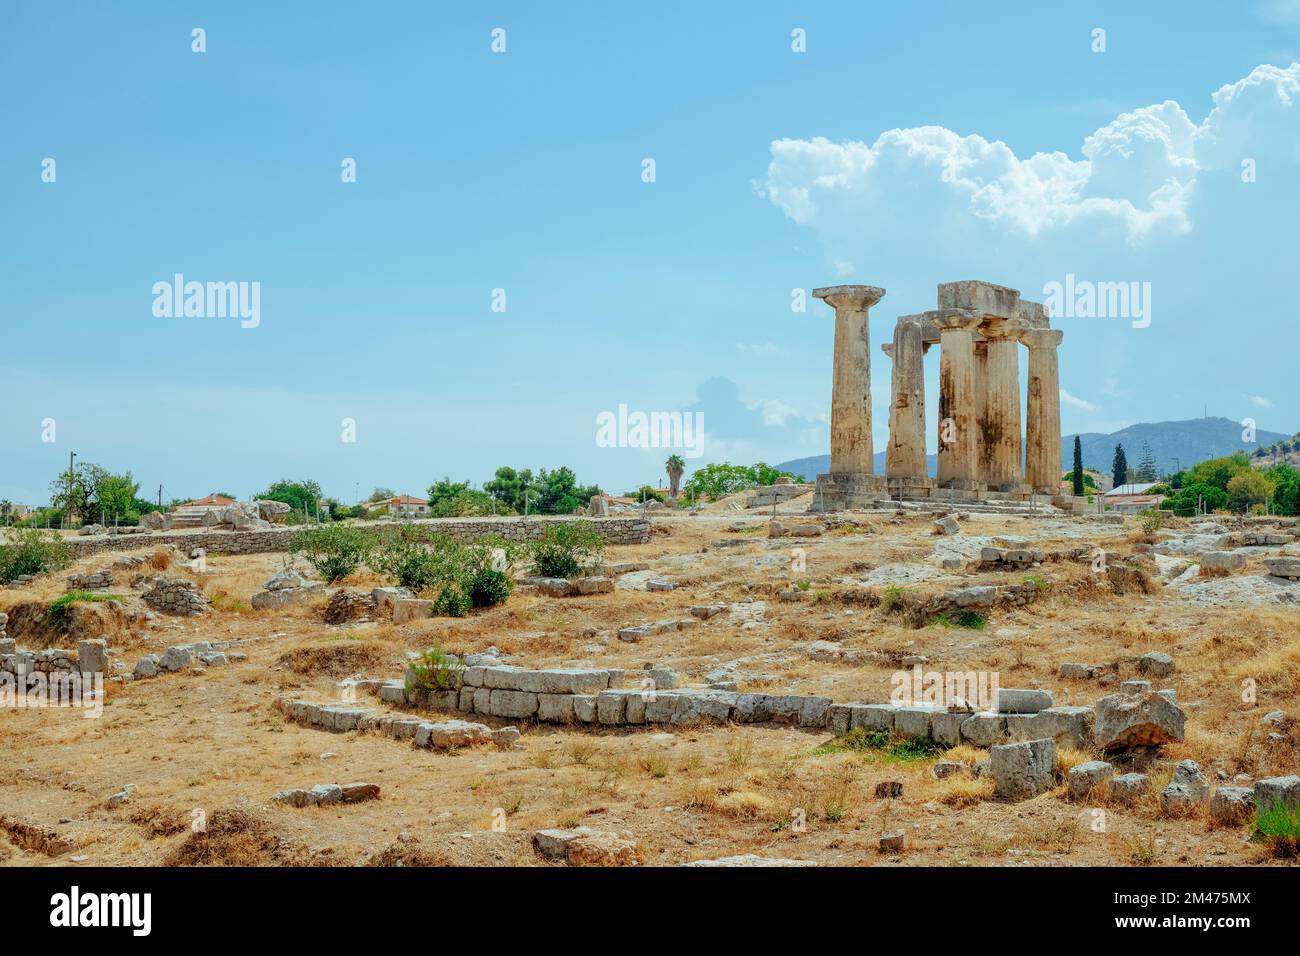 Una vista dei resti del famoso Tempio di Apollo, negli scavi archeologici dell'Antica Corinto, a Corinto, in Grecia, in una giornata estiva Foto Stock